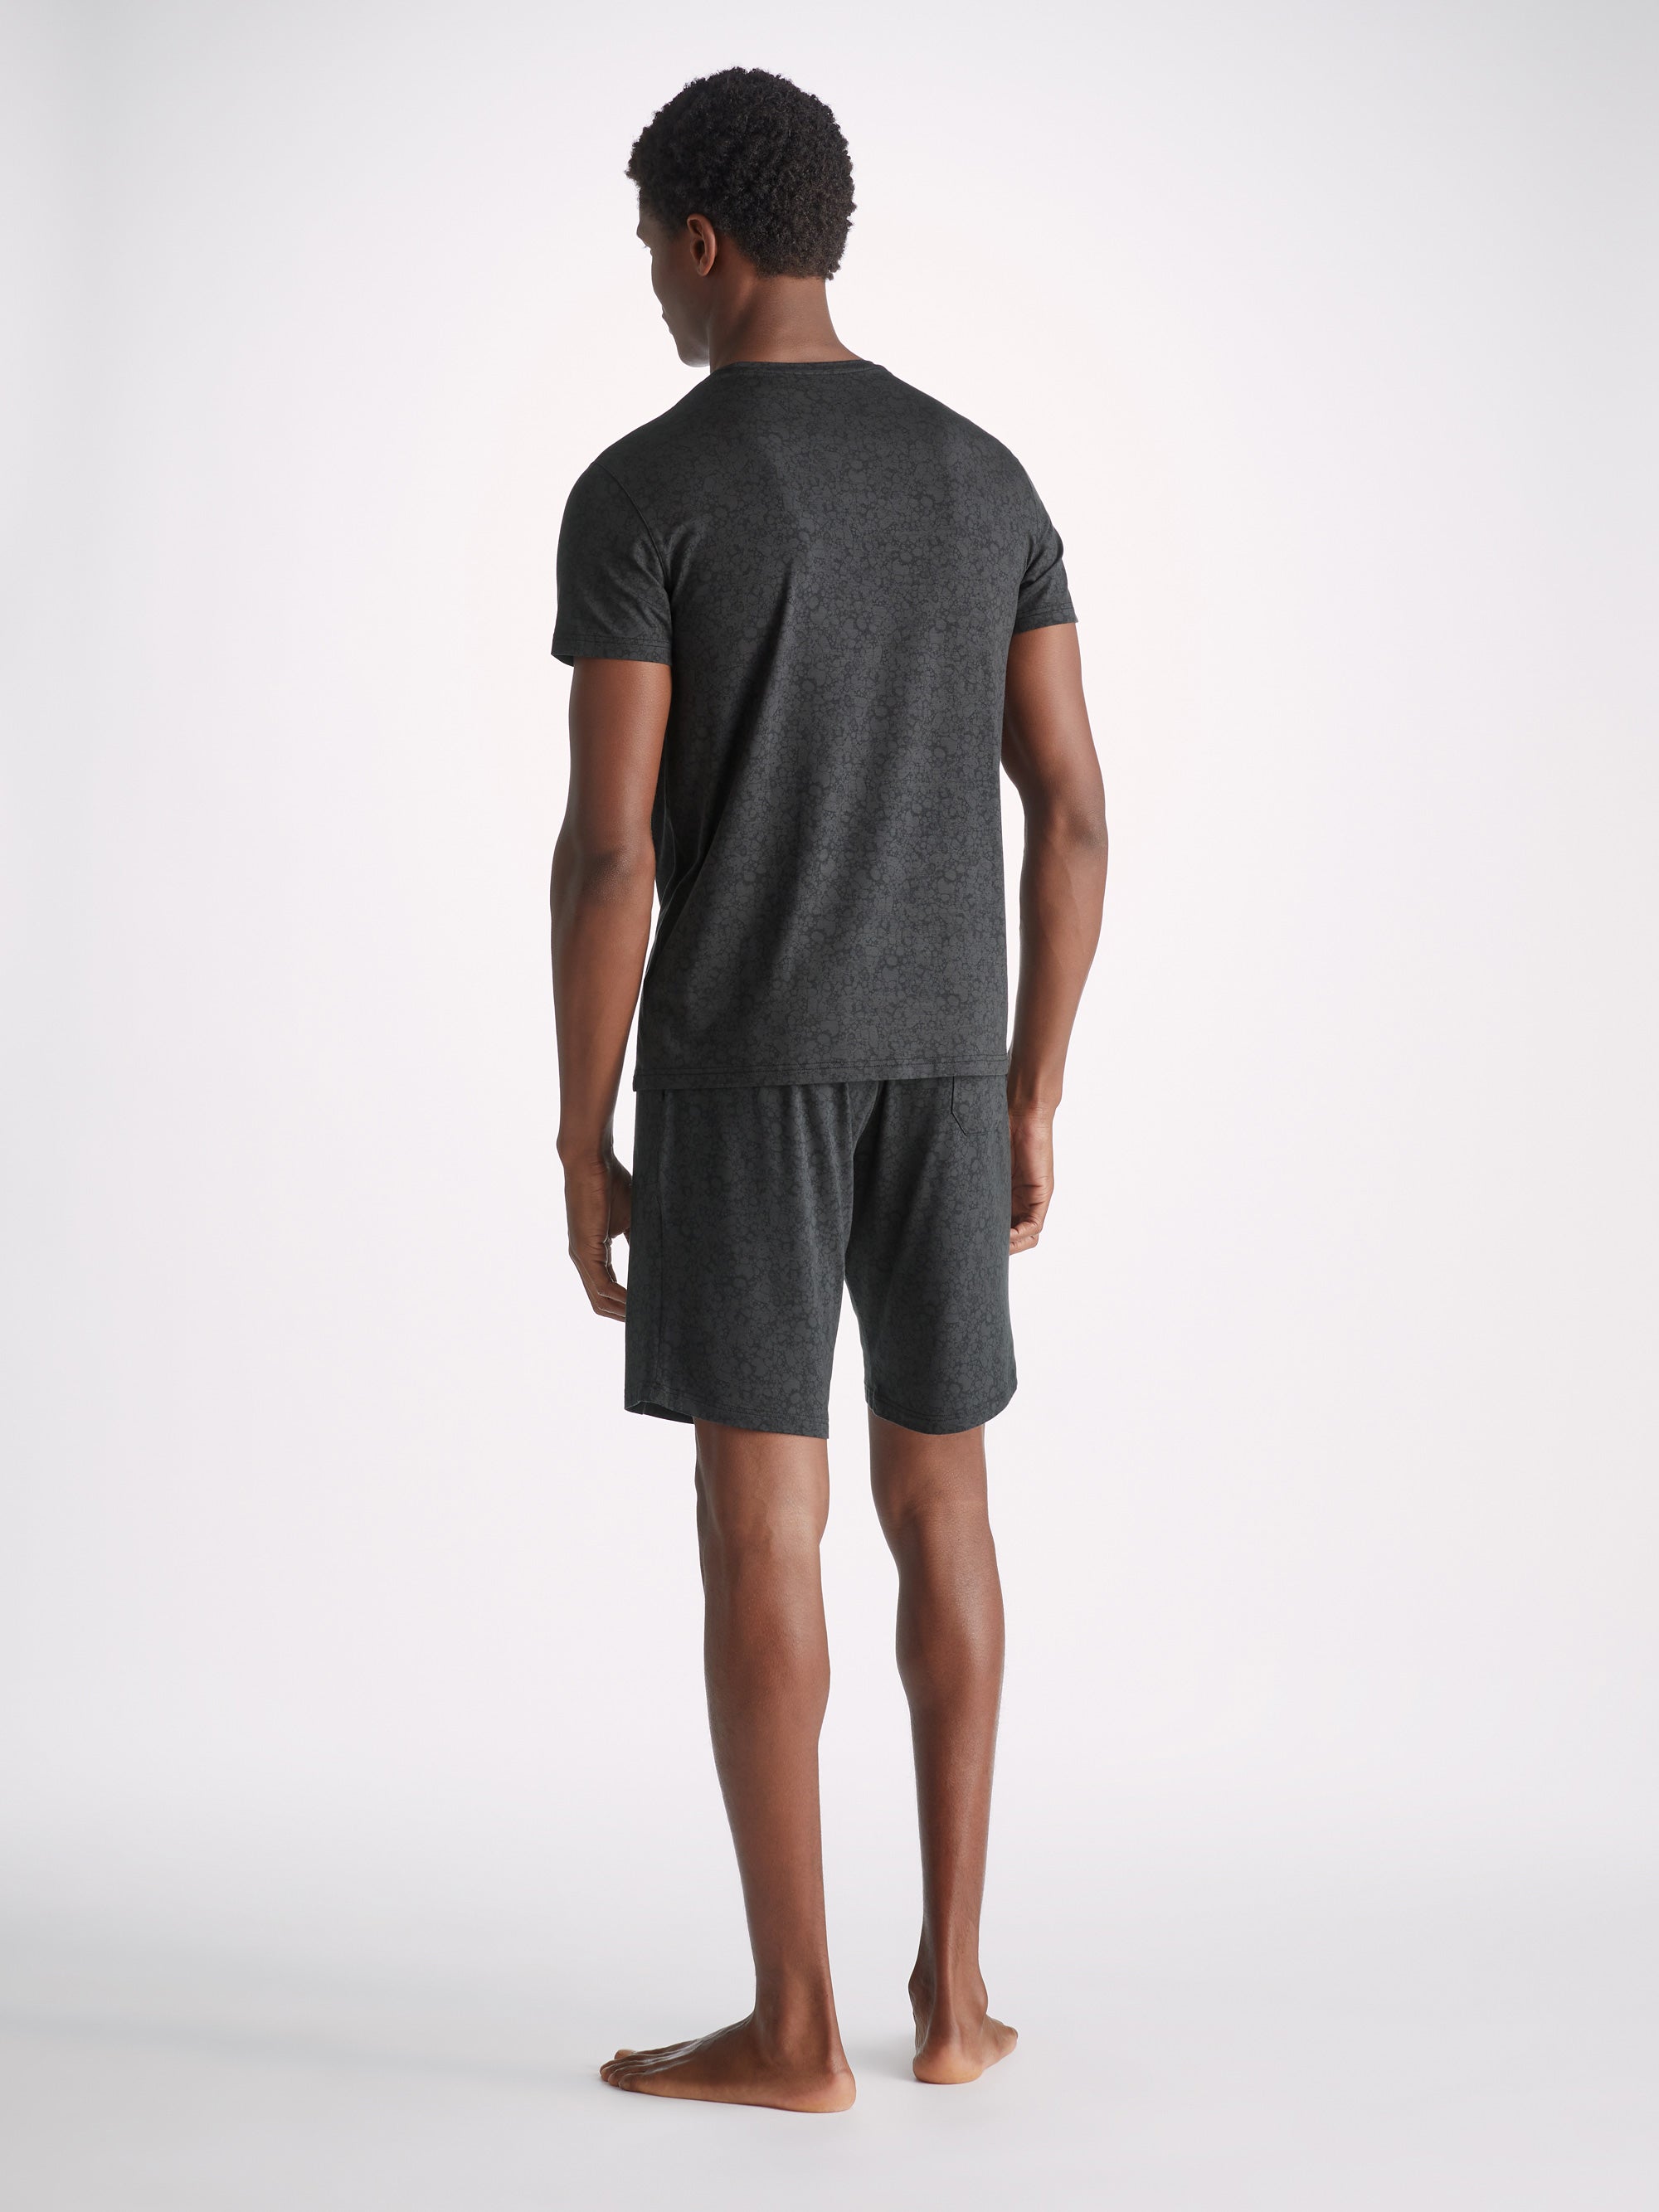 Men's Lounge Shorts London 10 Micro Modal Black